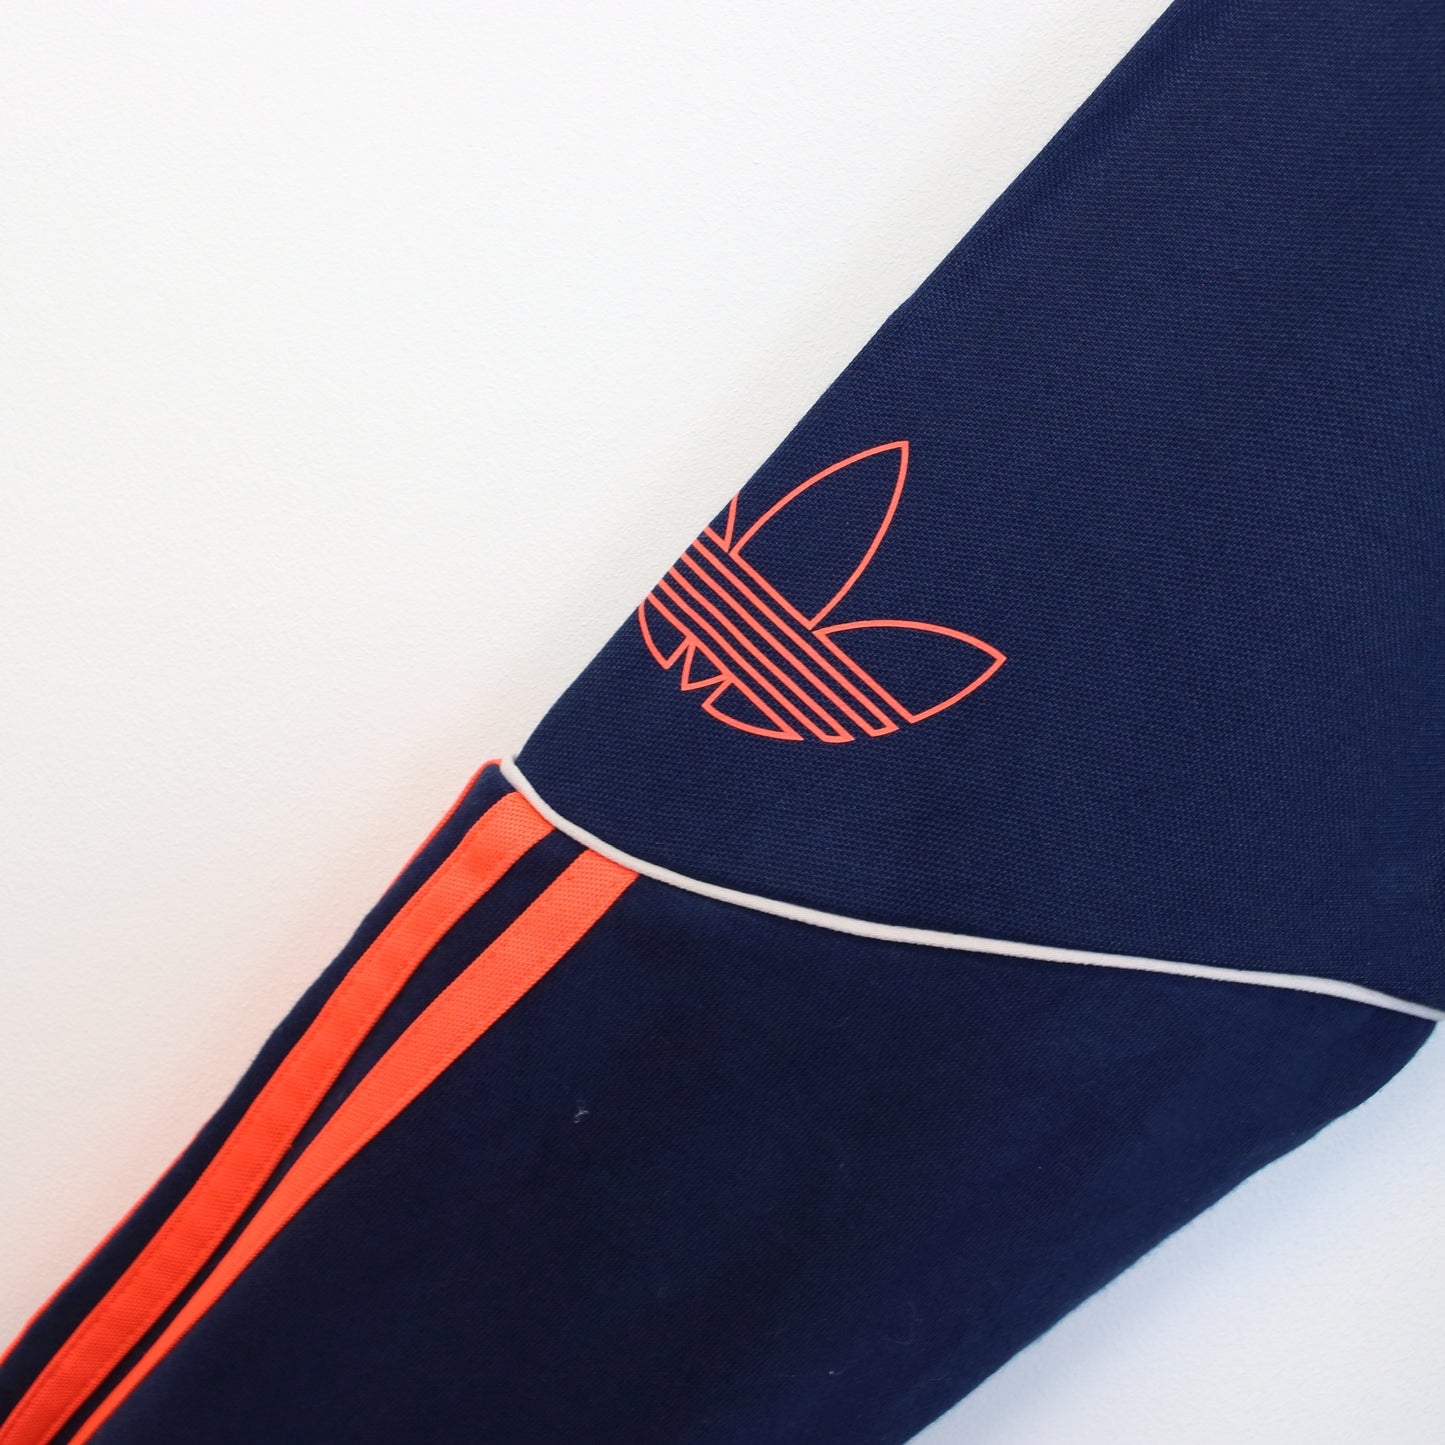 Vintage Adidas hoodie in navy and orange. Best fits S